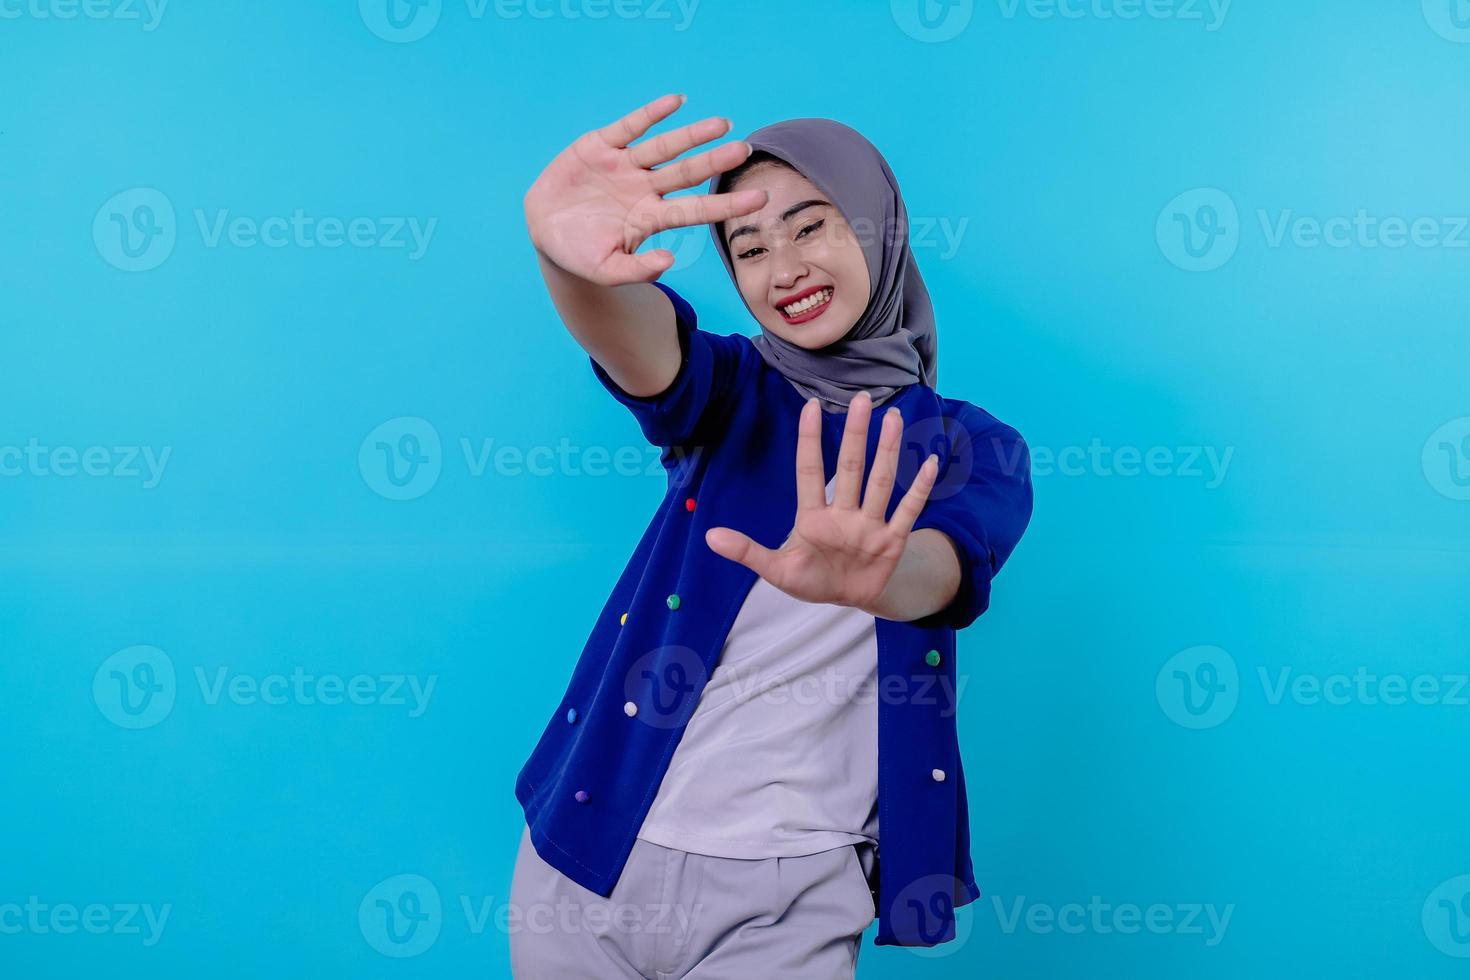 Optimistische charmante attraktive junge Frau mit süßem Lächeln freudig mit schönem weißem Lächeln auf hellblauem Hintergrund foto